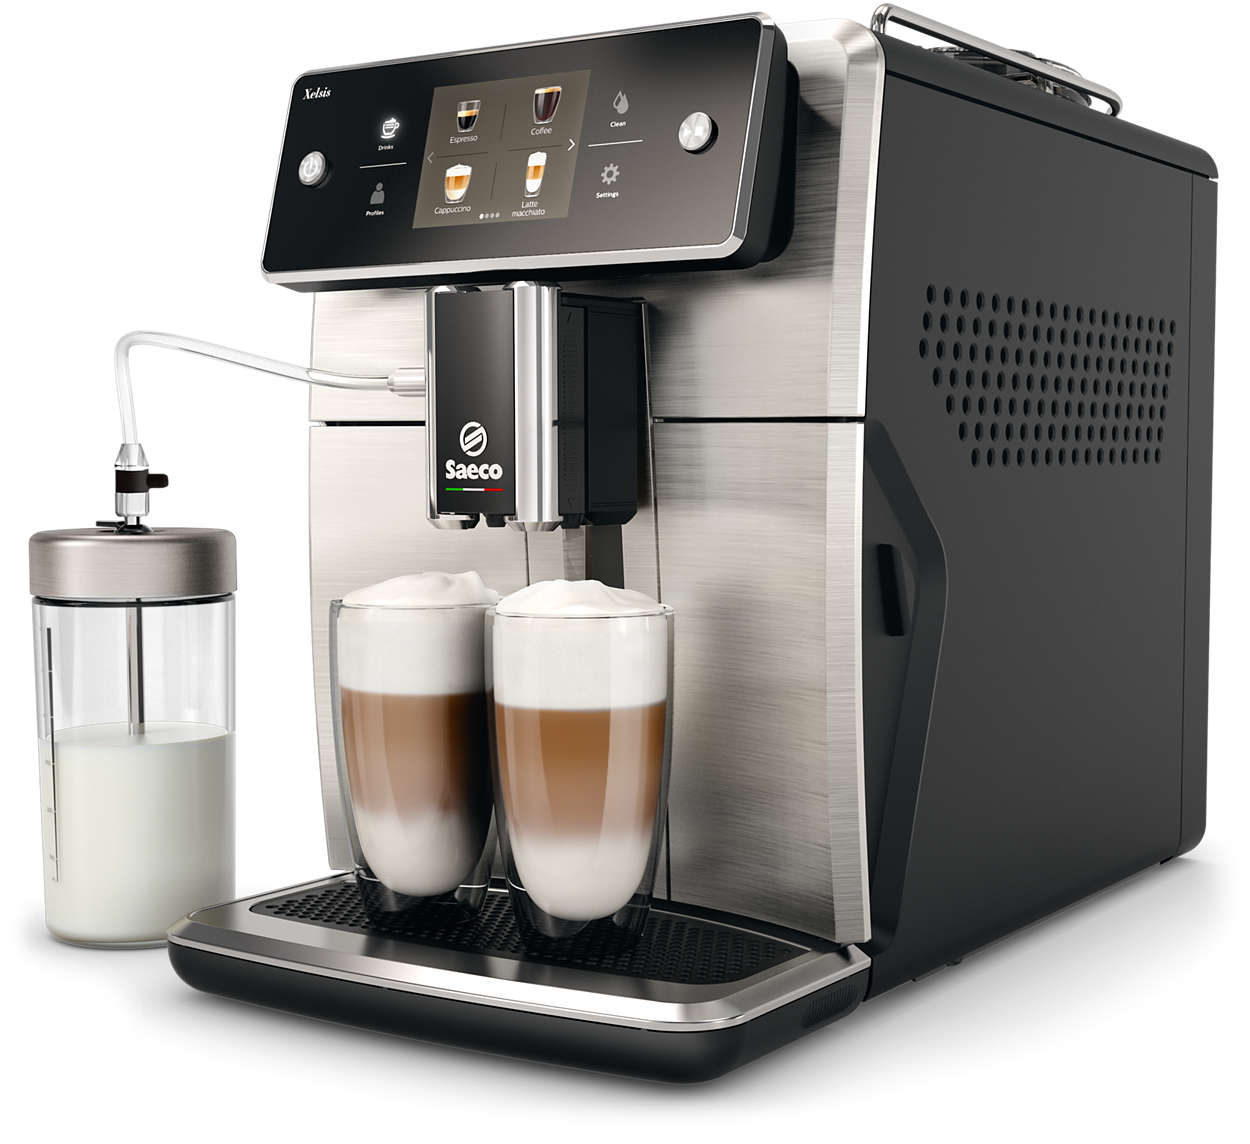 Den mest avancerede Saeco-espressomaskine til dato